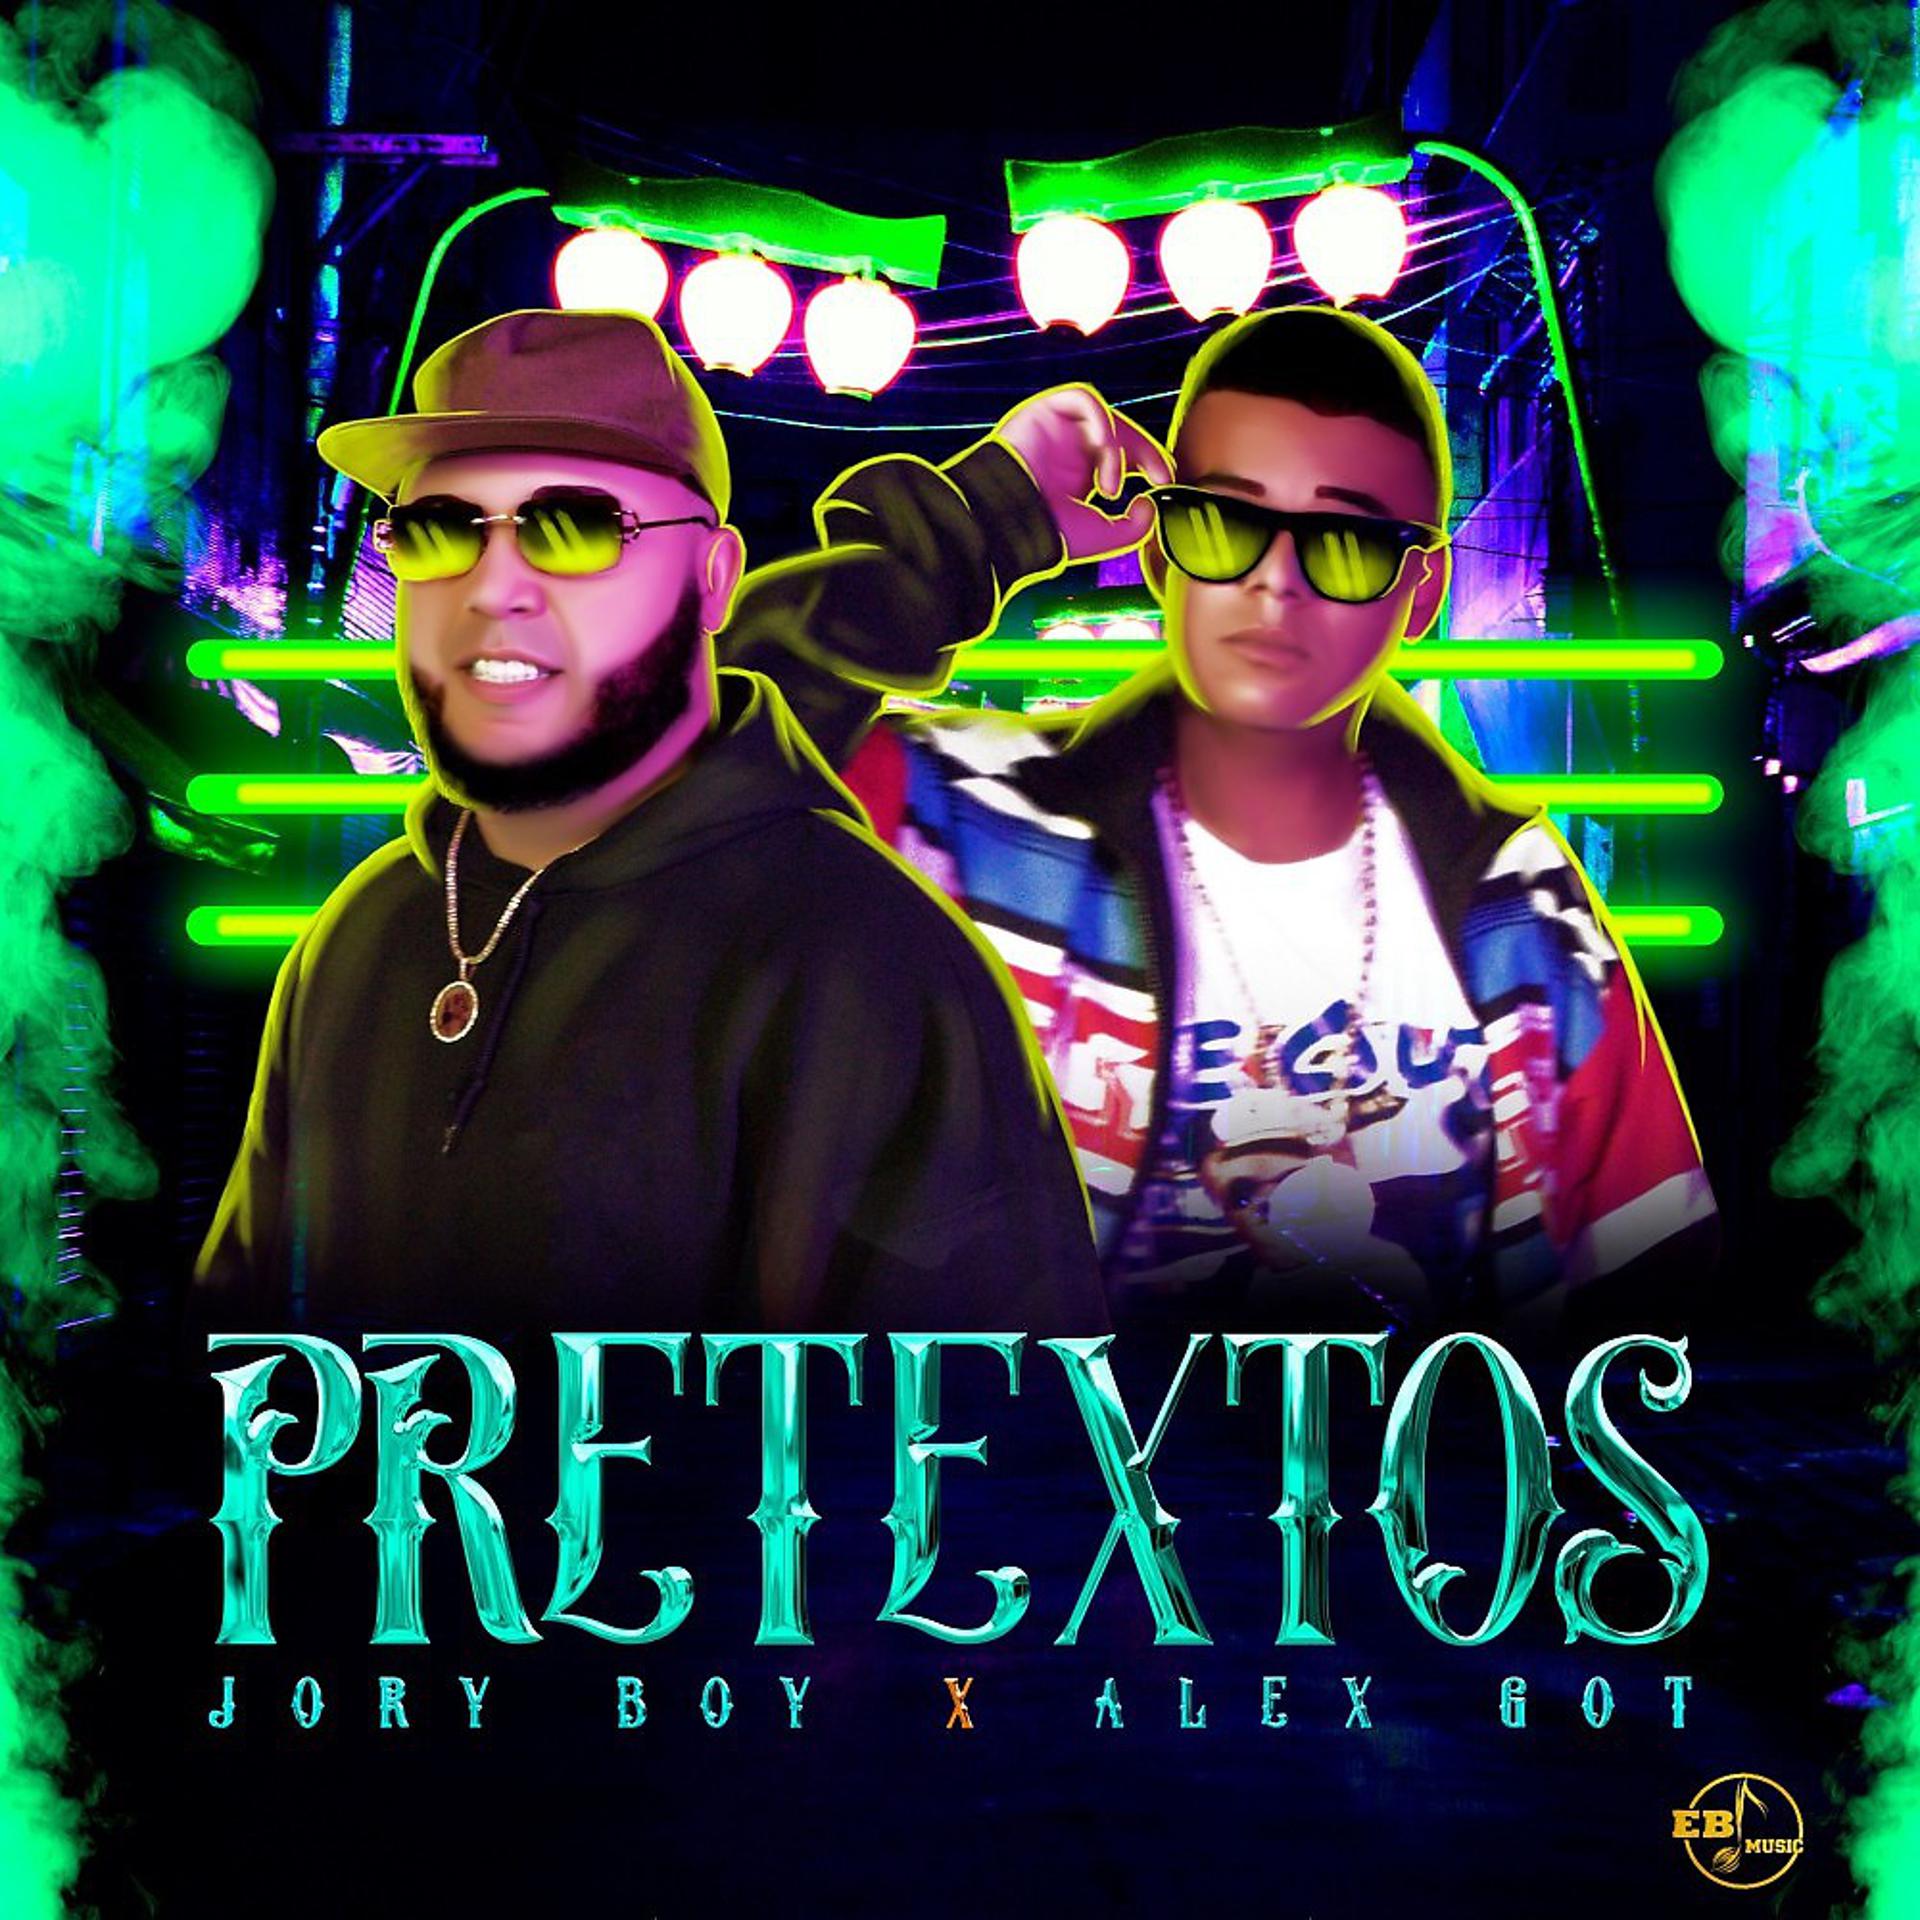 Постер альбома Pretextos